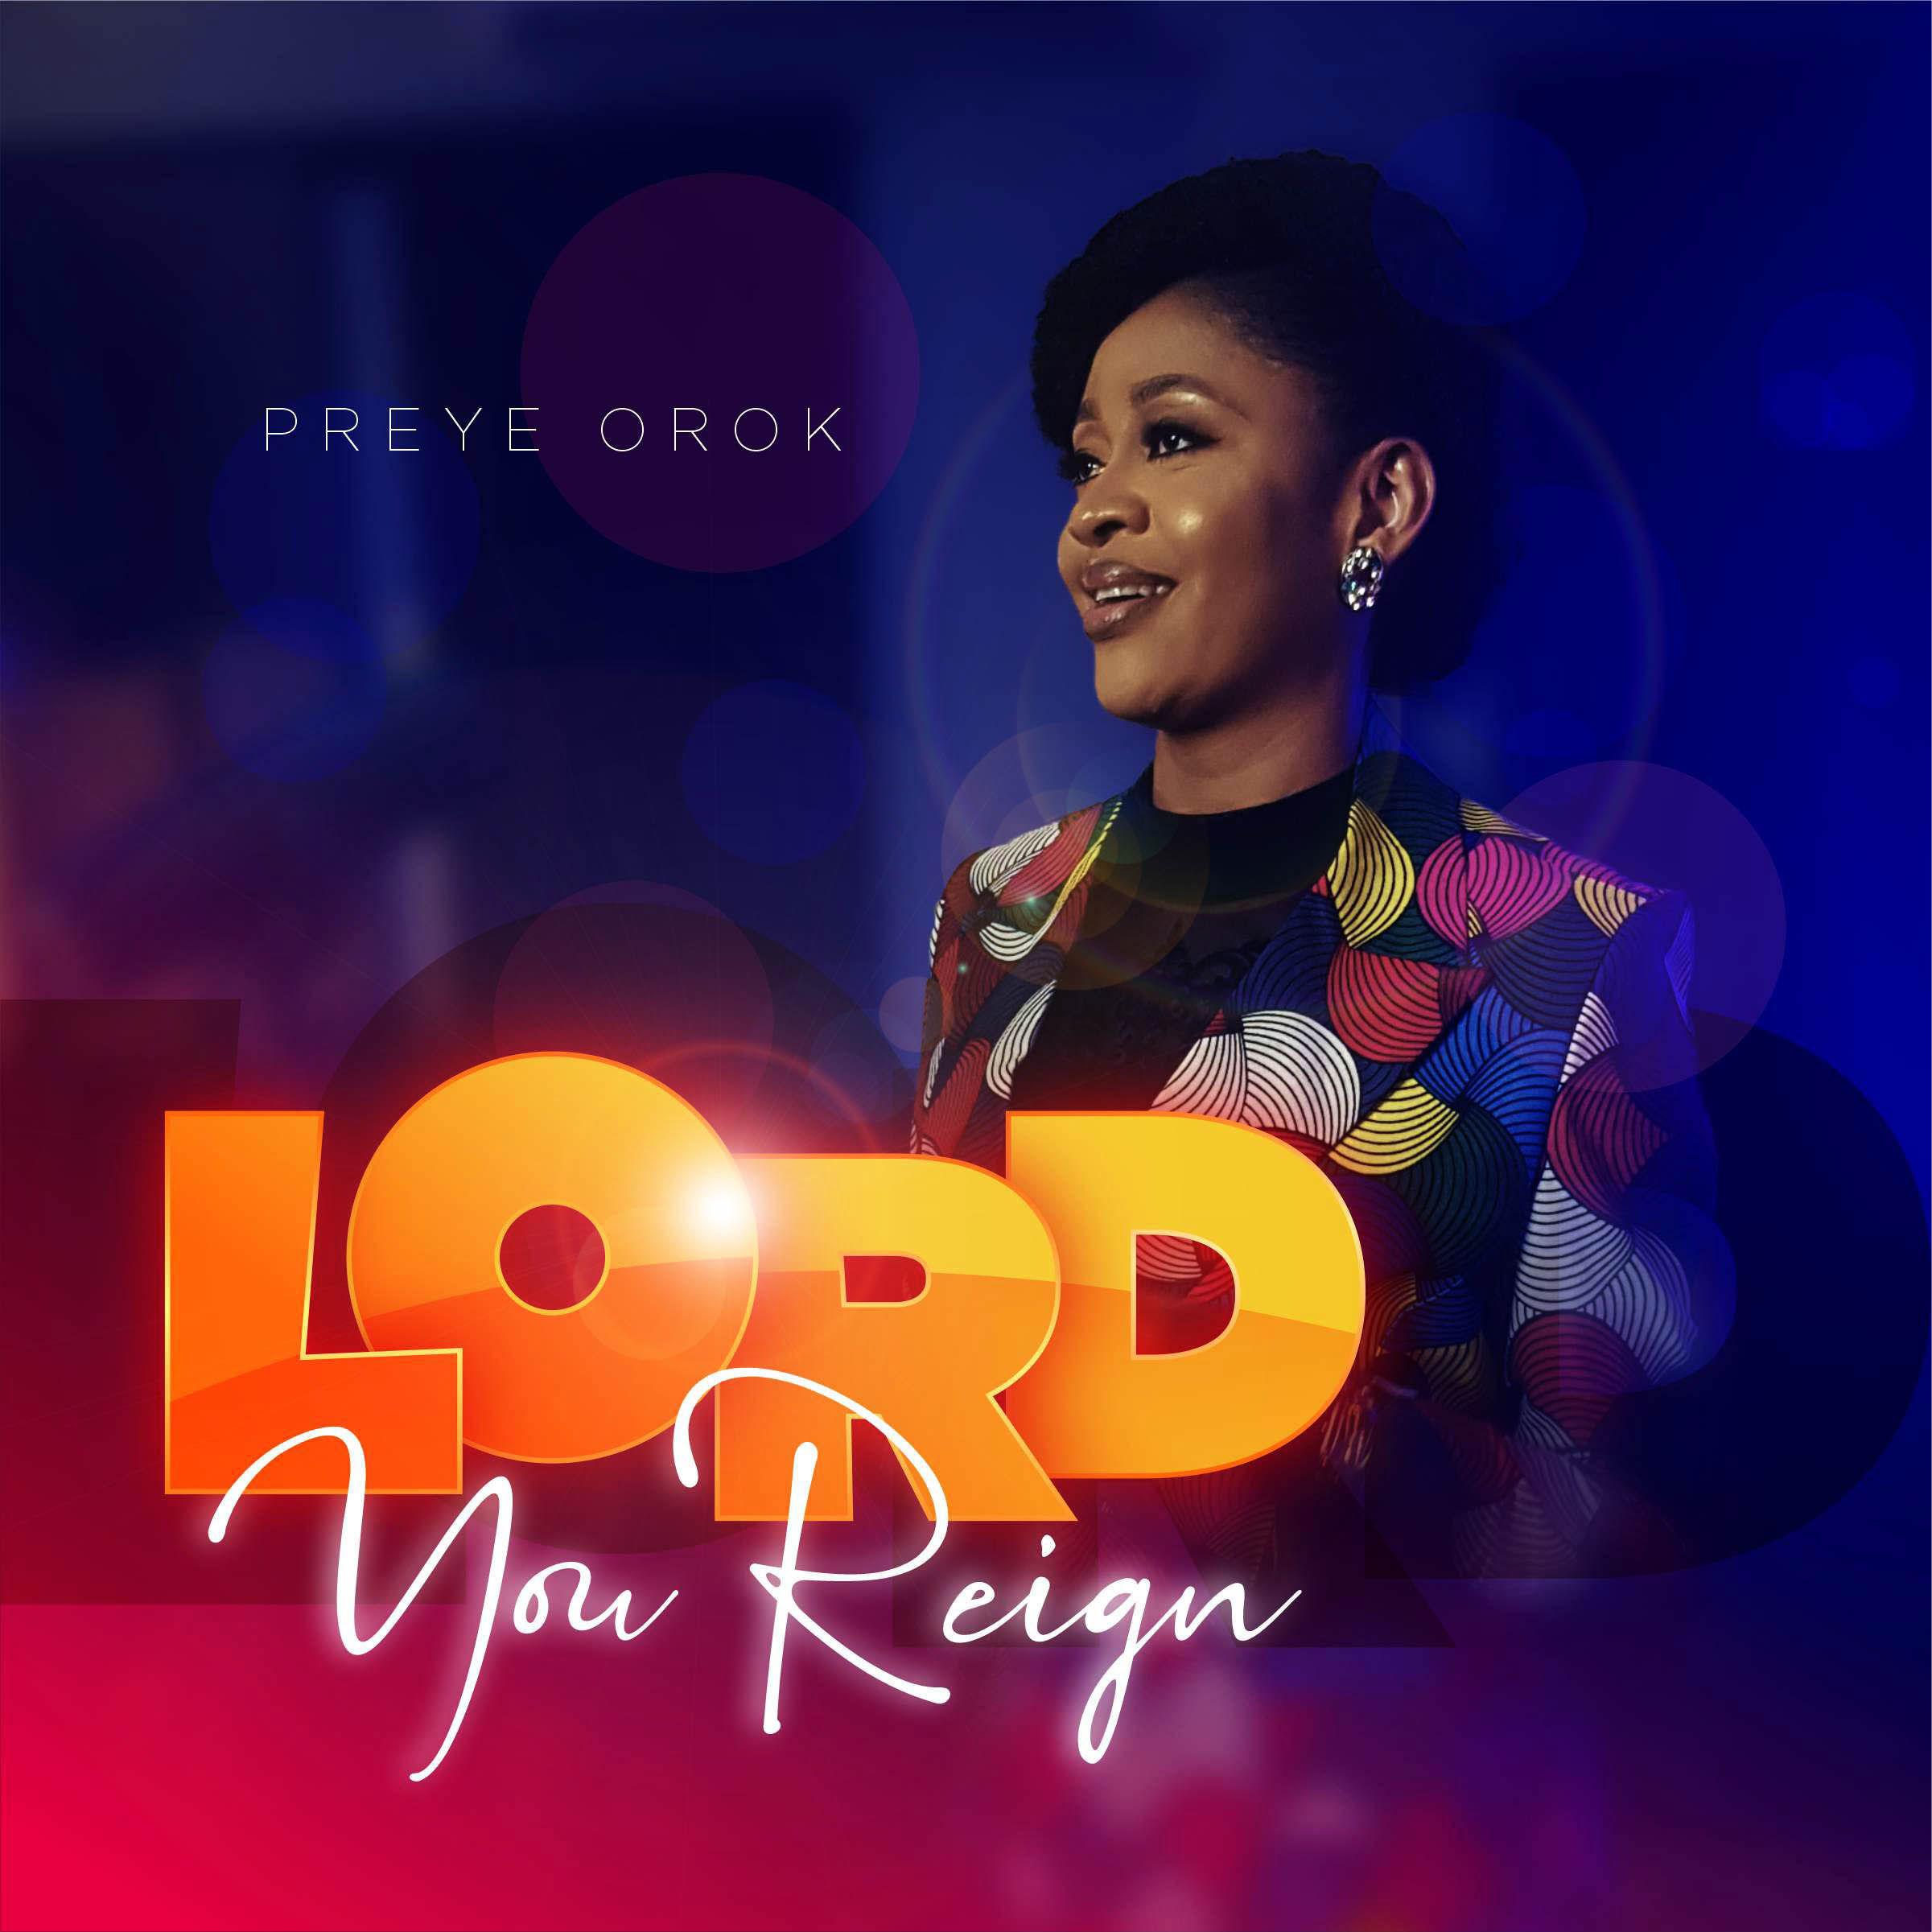 Download Mp3: Preye Orok - Lord You Reign